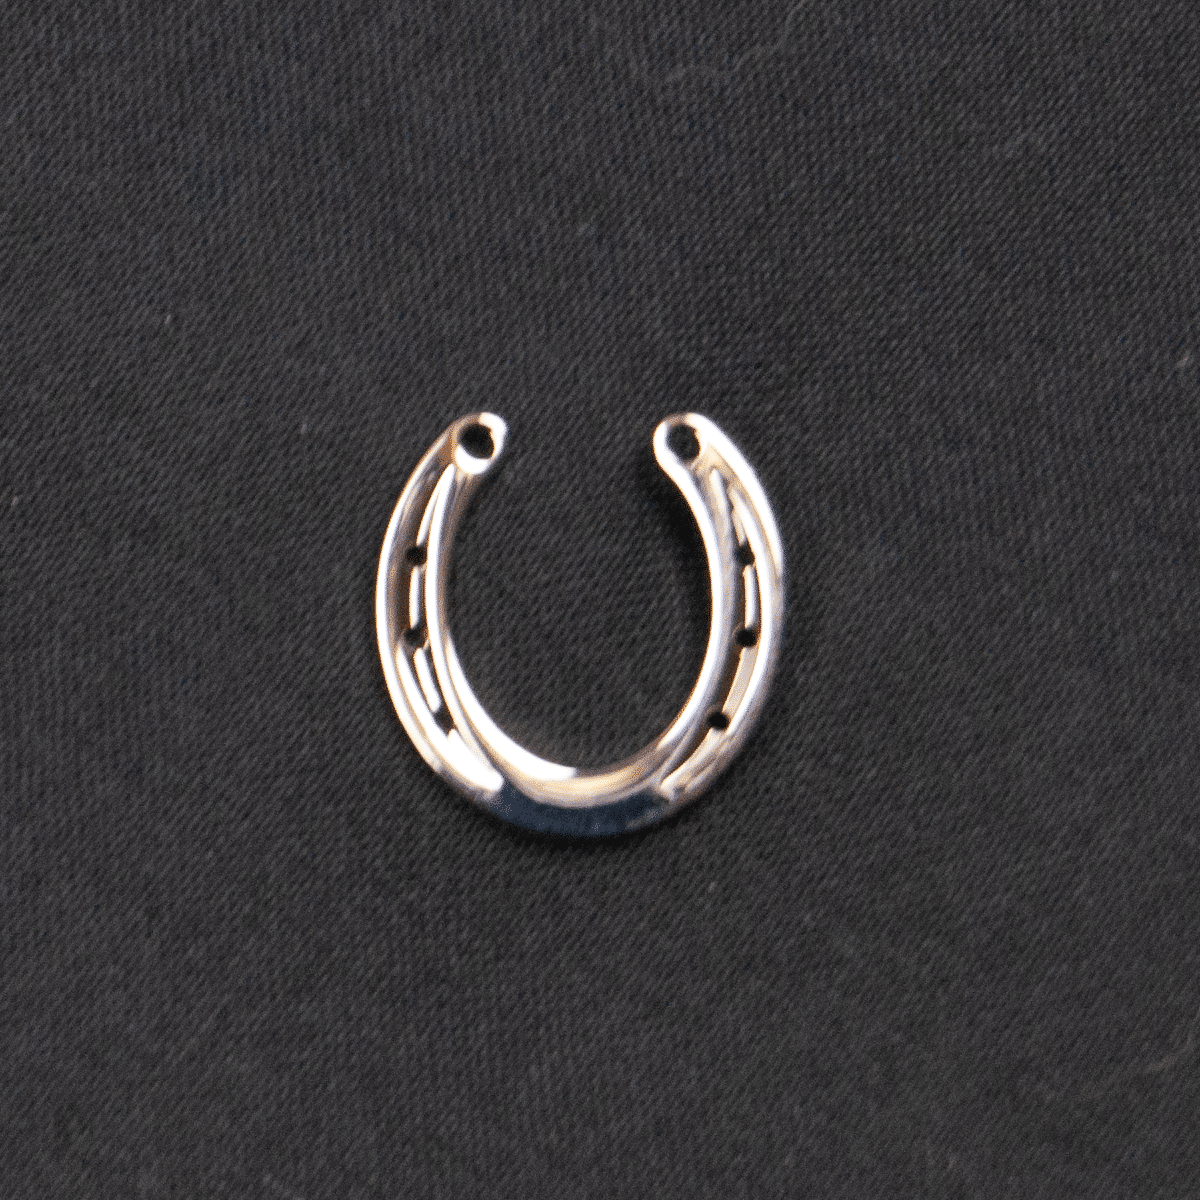 Smycke- en pin med en hästsko